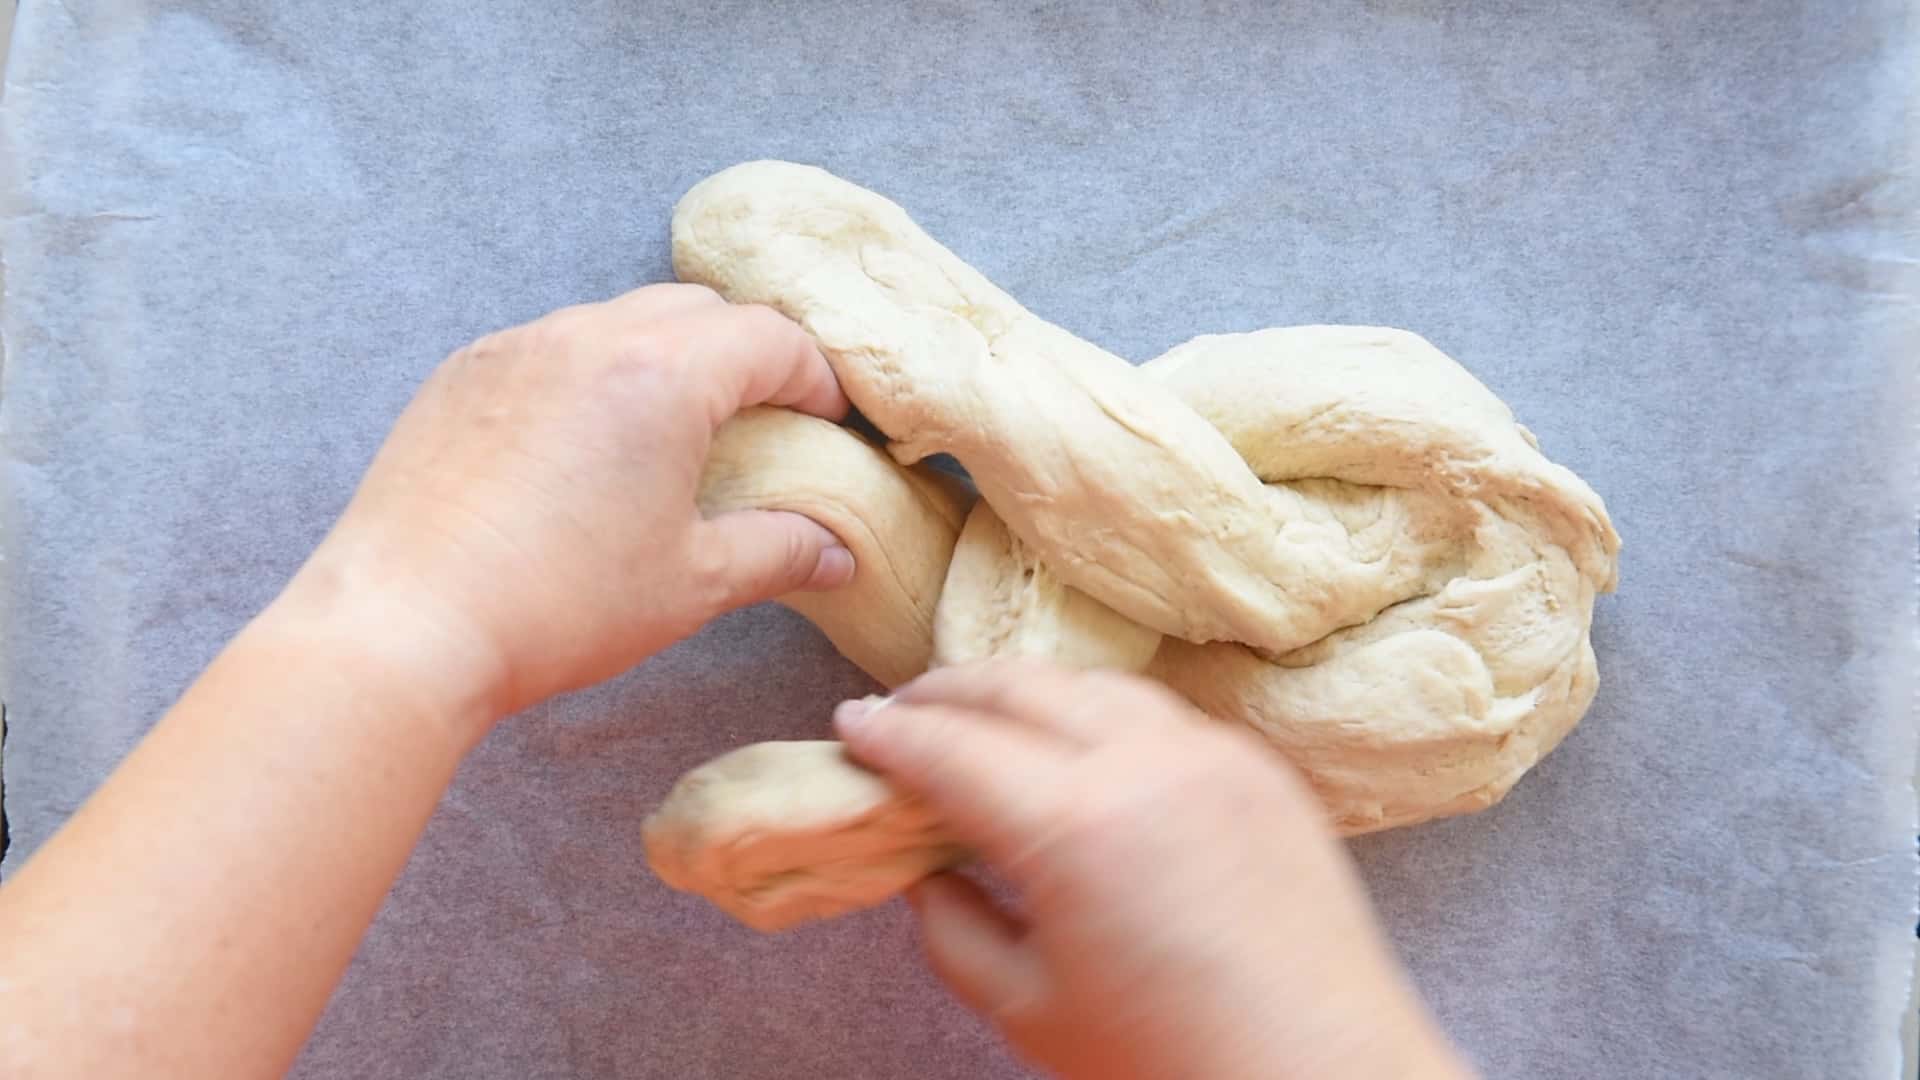 braid the dough